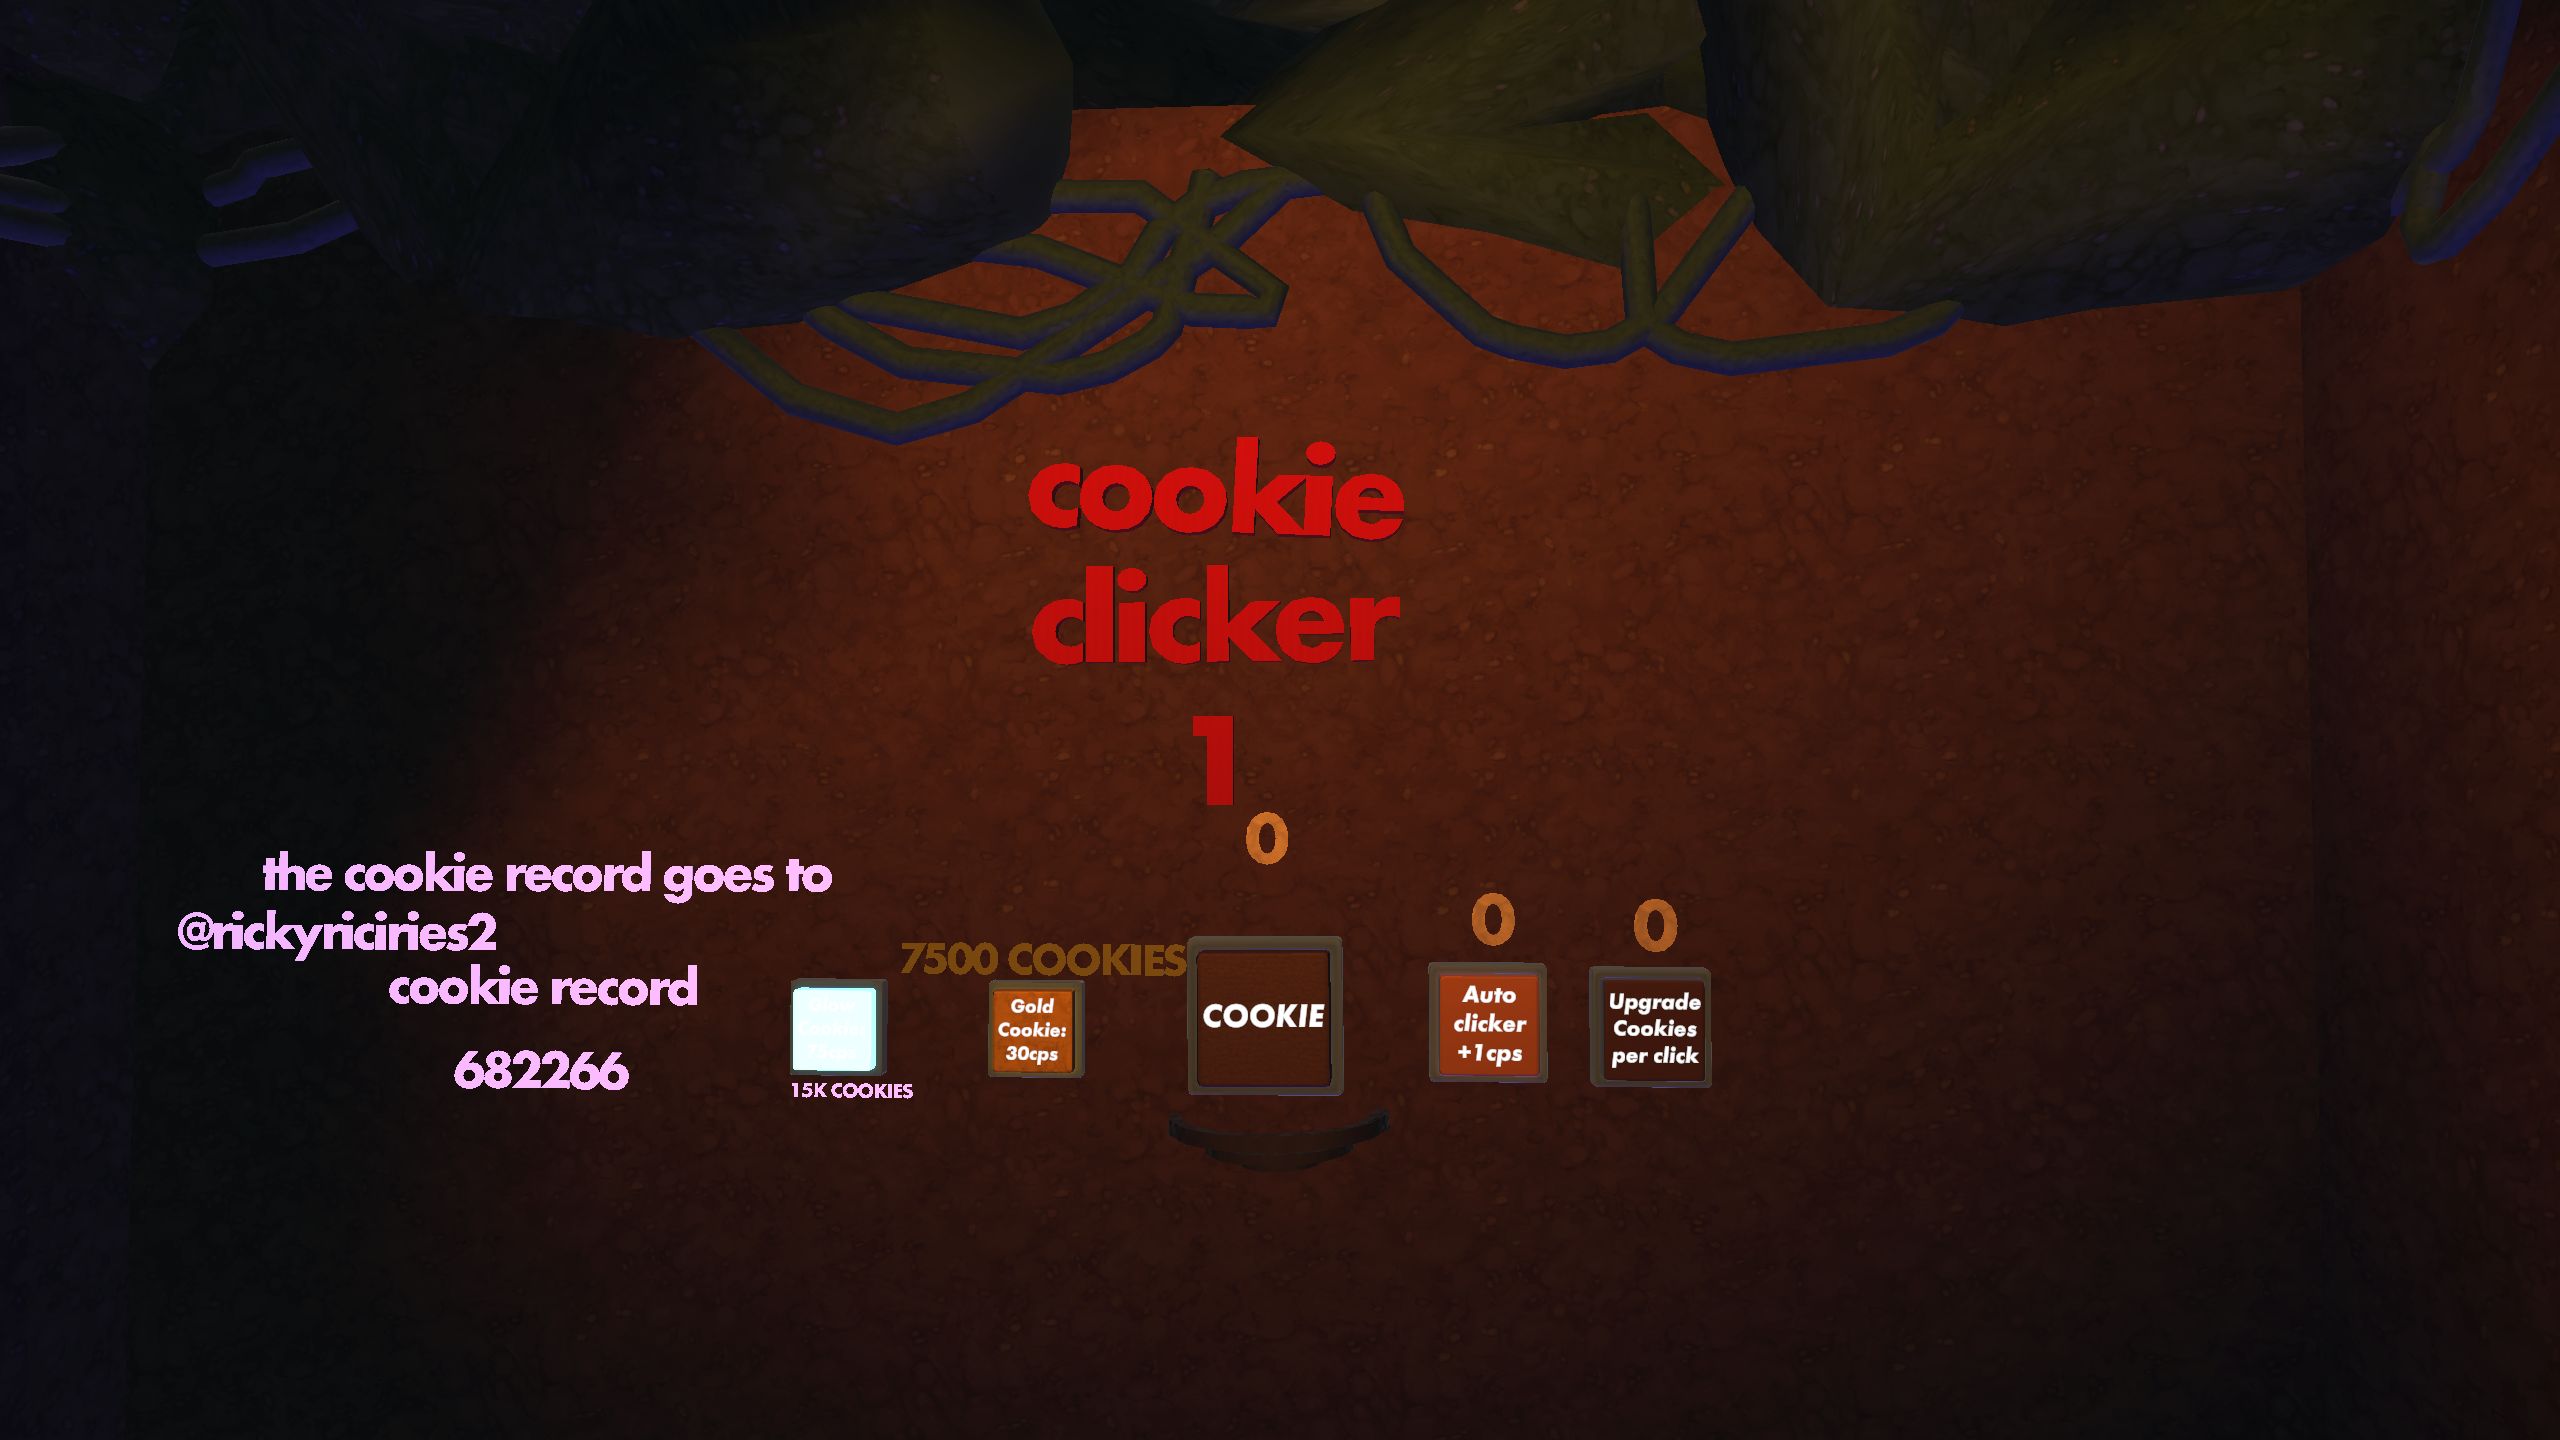 Auto Clicker for Cookie Clicker